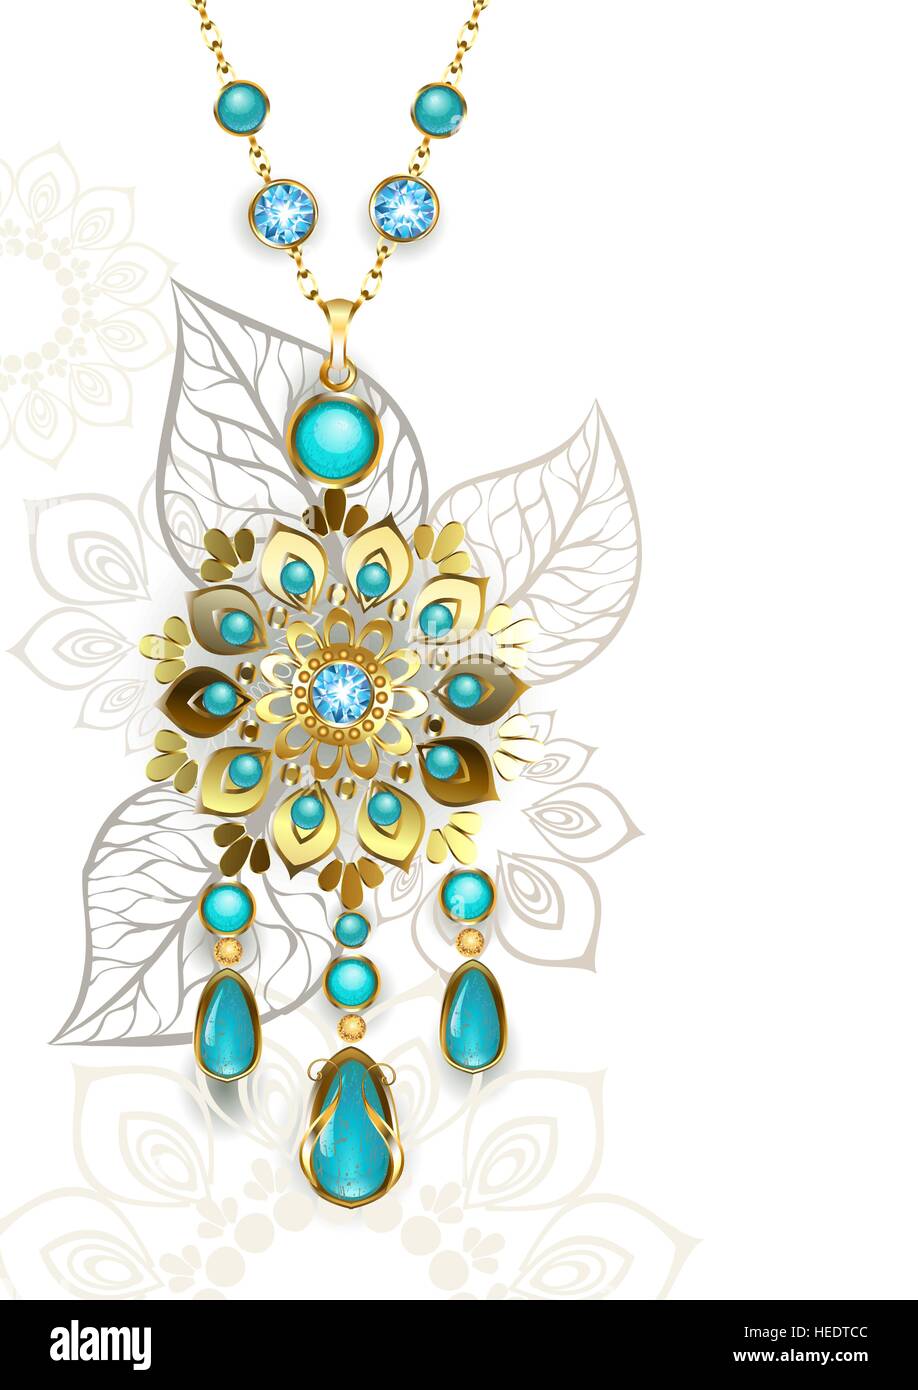 Médaillon or décorées dans un style oriental sur un fond à motifs turquoise clair. La conception de bijoux. Illustration de Vecteur